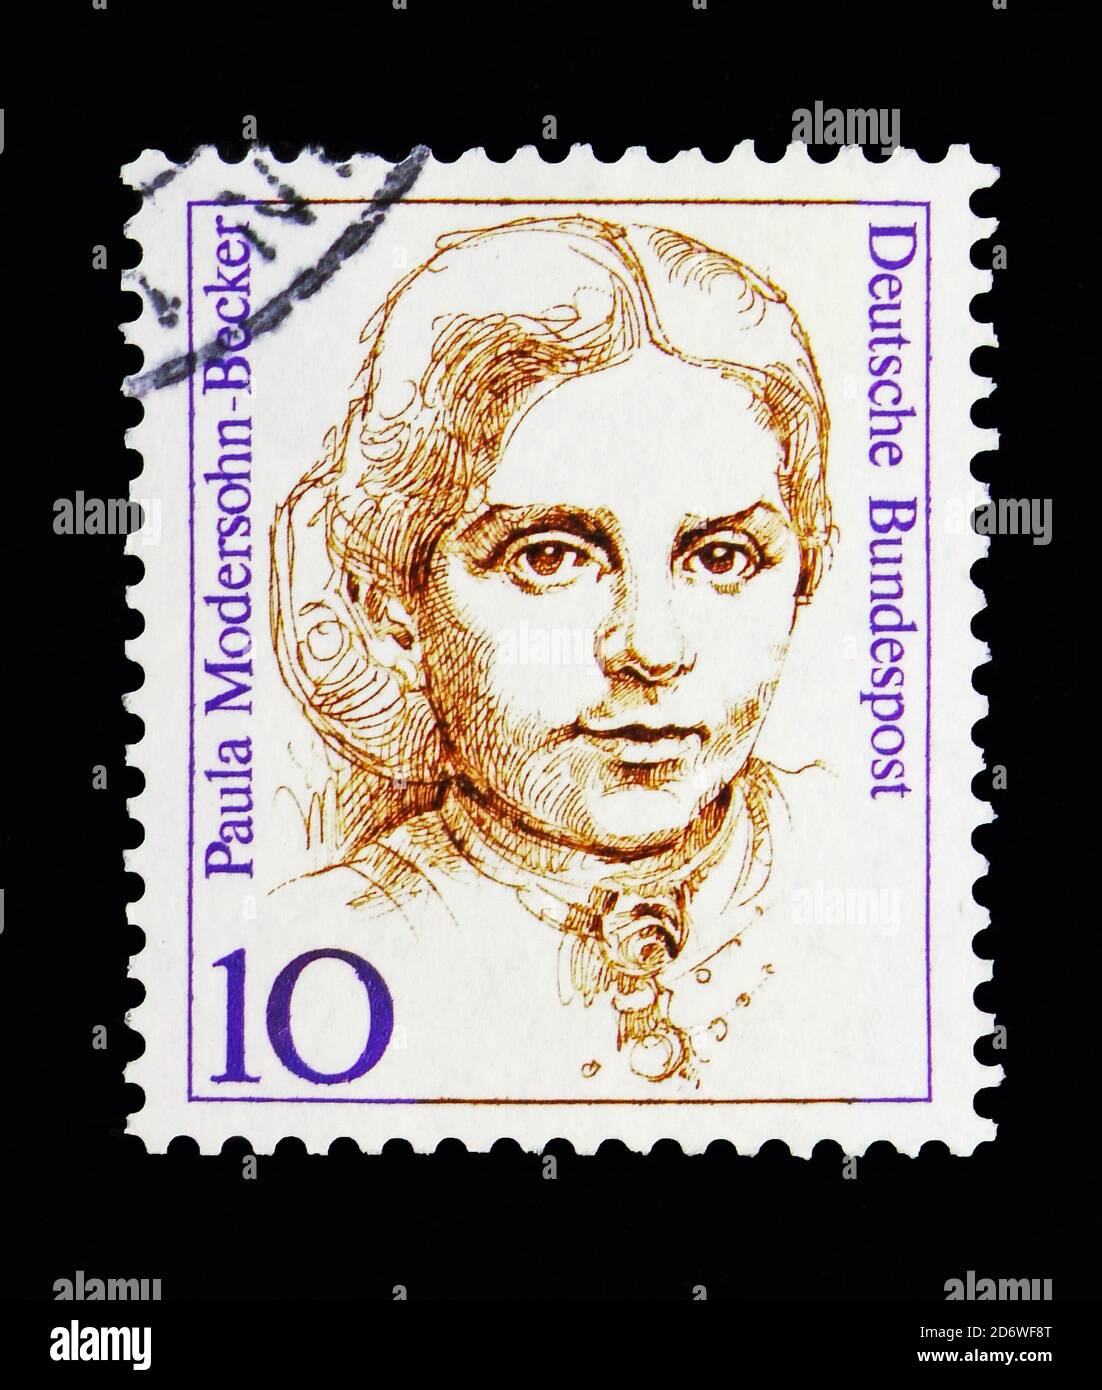 MOSCA, RUSSIA - 13 MAGGIO 2018: Un francobollo stampato nella Repubblica federale di Germania mostra Paula Modersohn-Becker (1876-1907), pittore, Donne in tedesco Histo Foto Stock